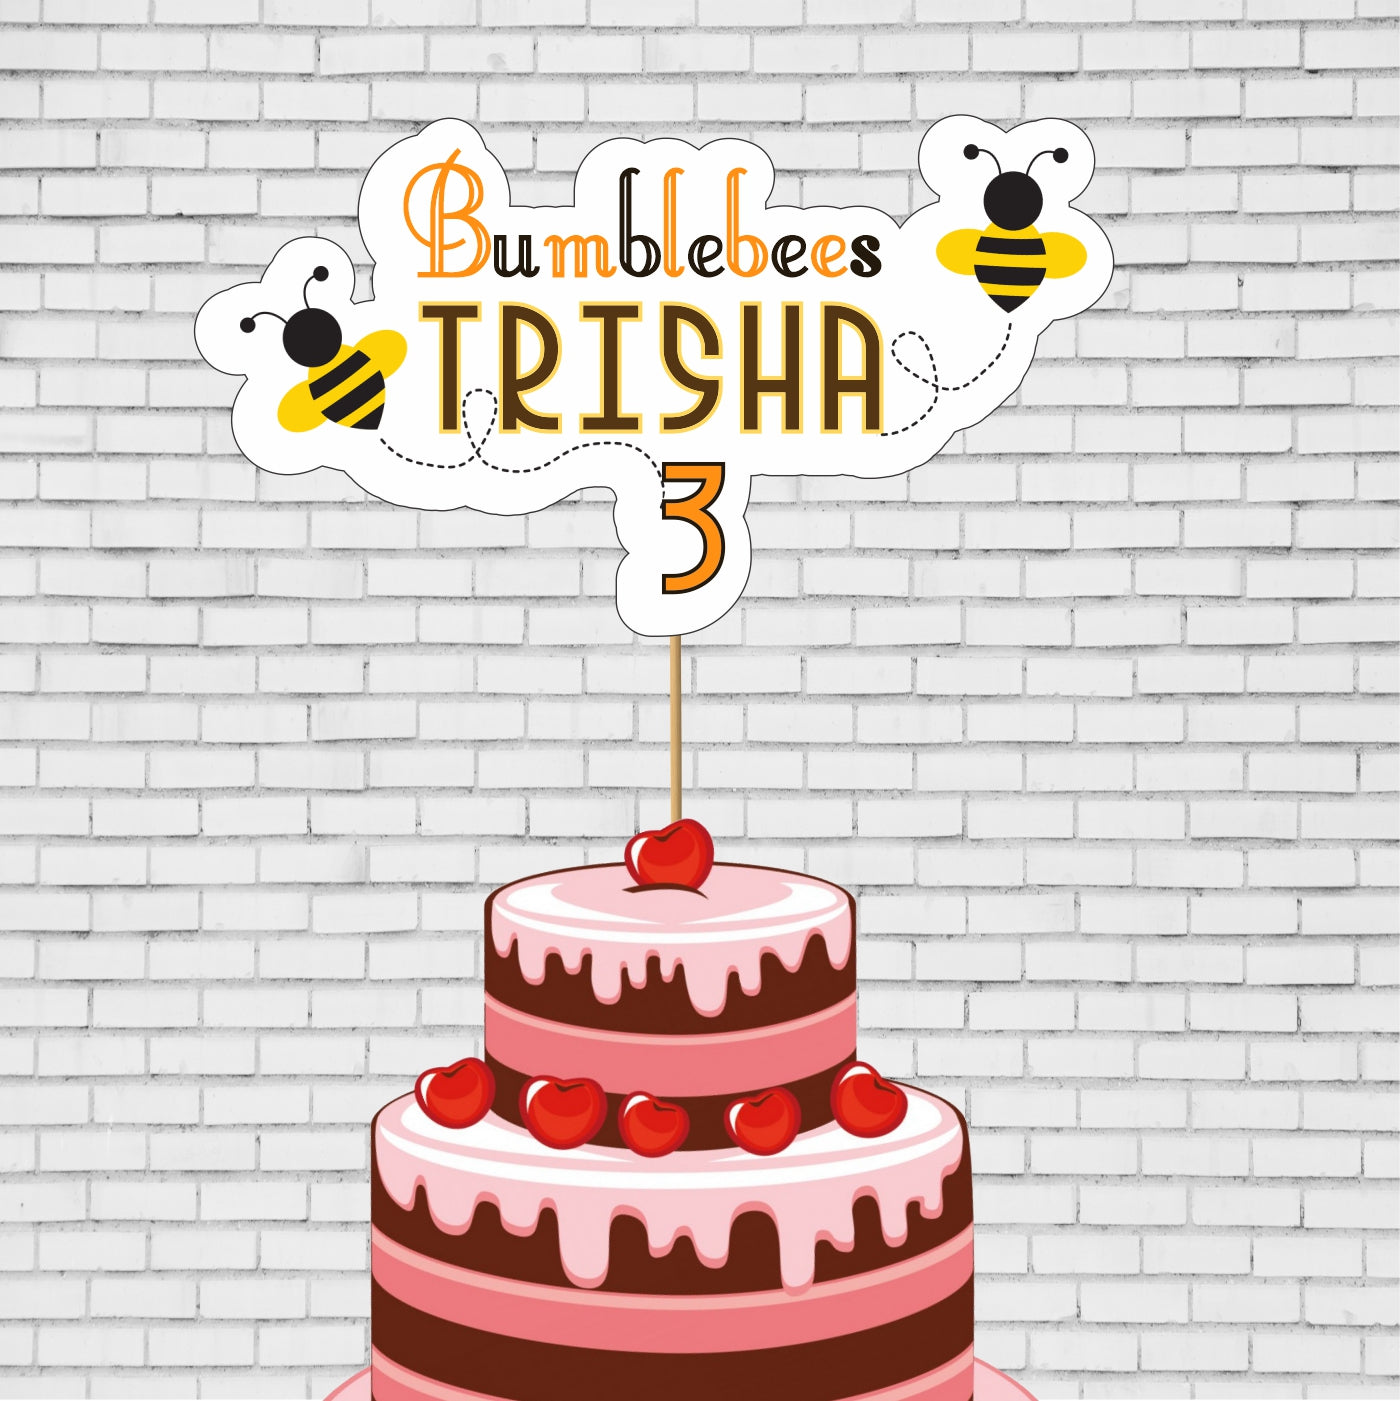 Update more than 35 cake bee trichy super hot - in.daotaonec